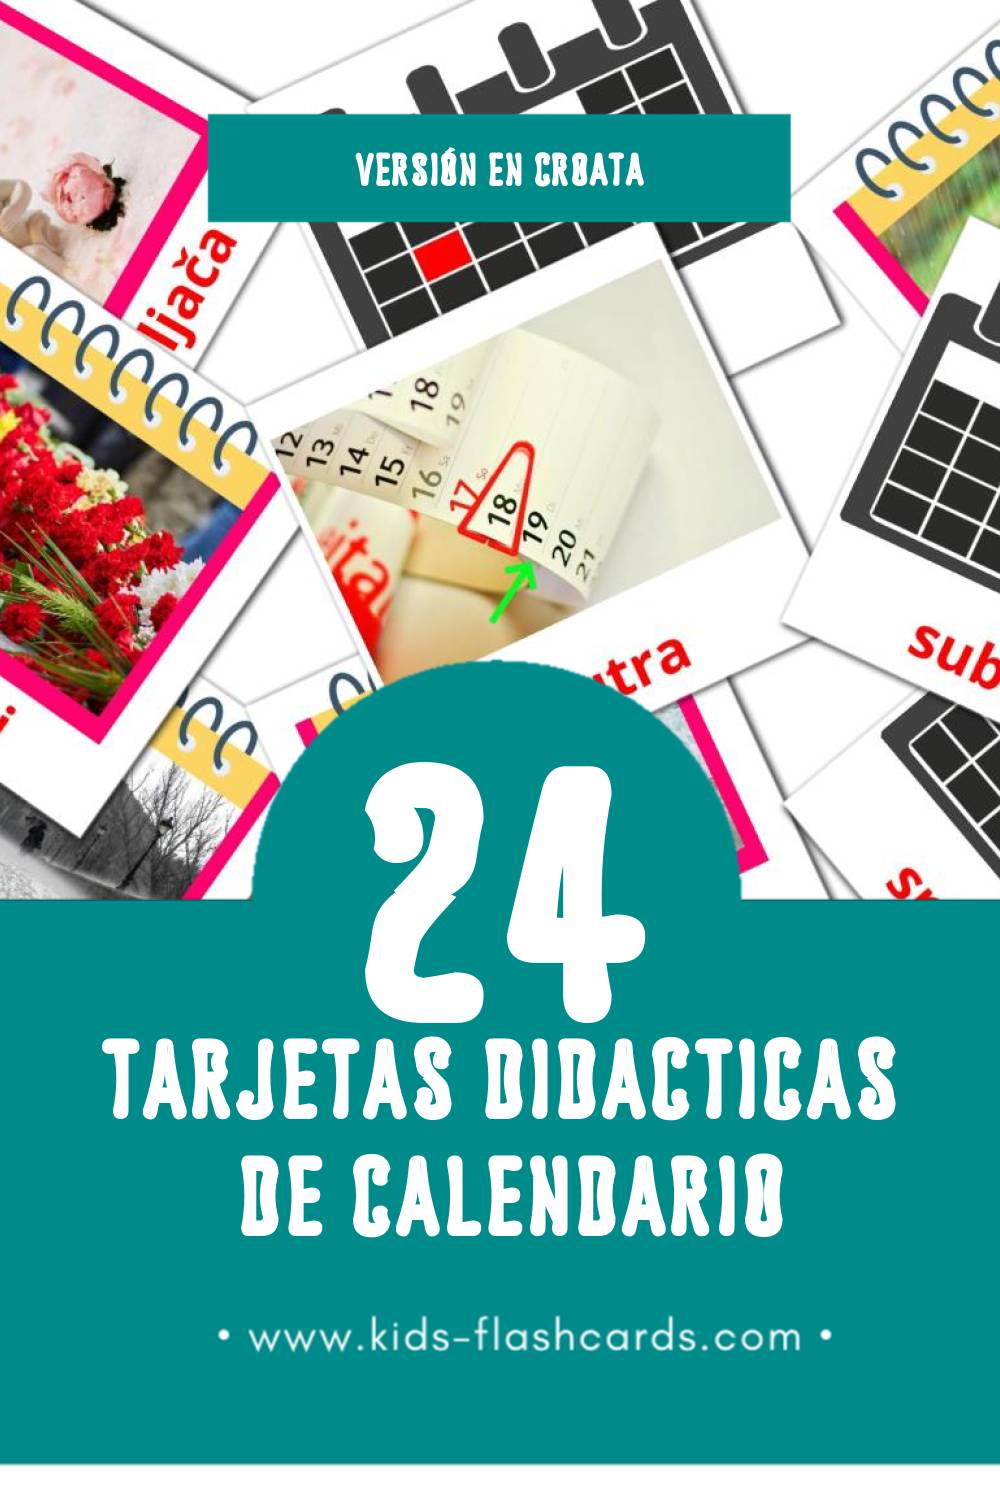 Tarjetas visuales de kalendar para niños pequeños (24 tarjetas en Croata)